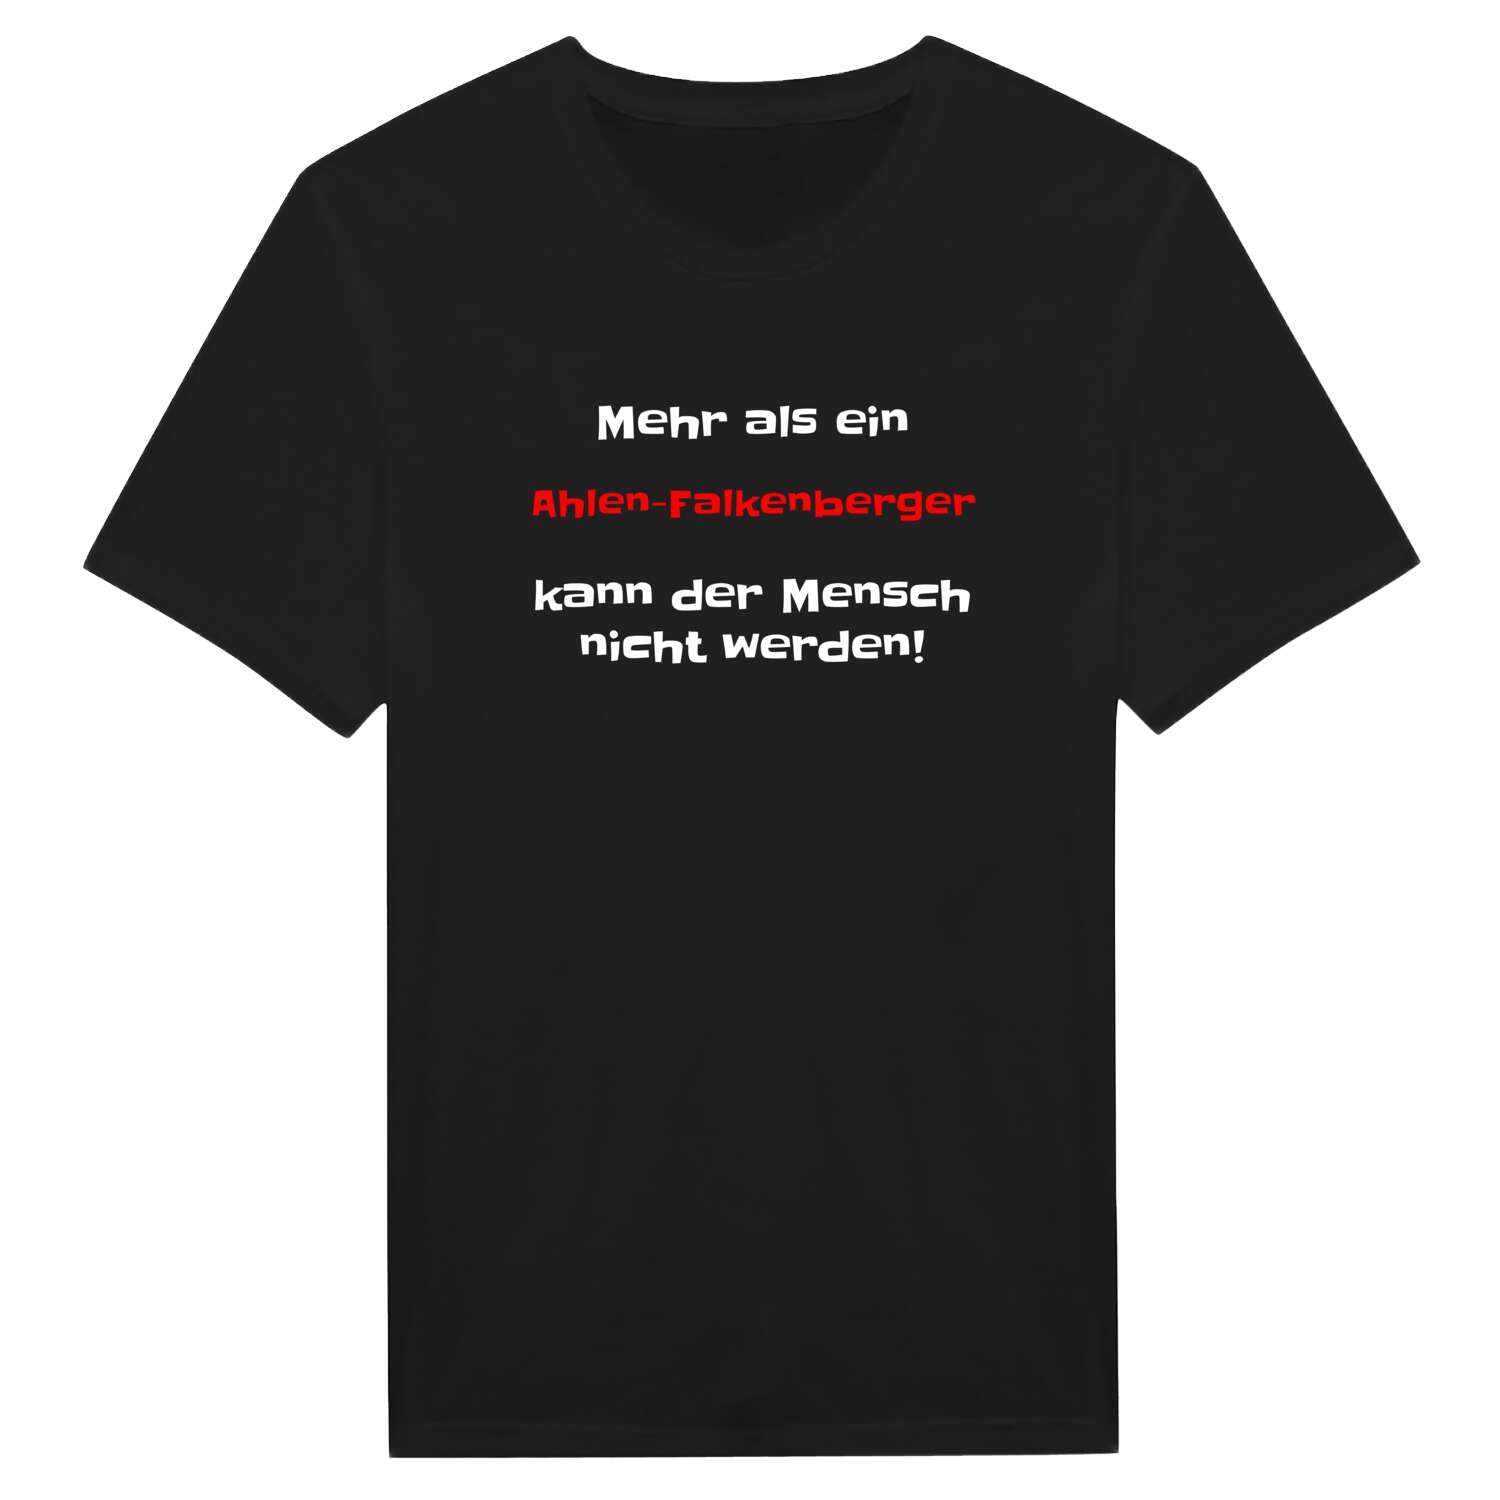 Ahlen-Falkenberg T-Shirt »Mehr als ein«